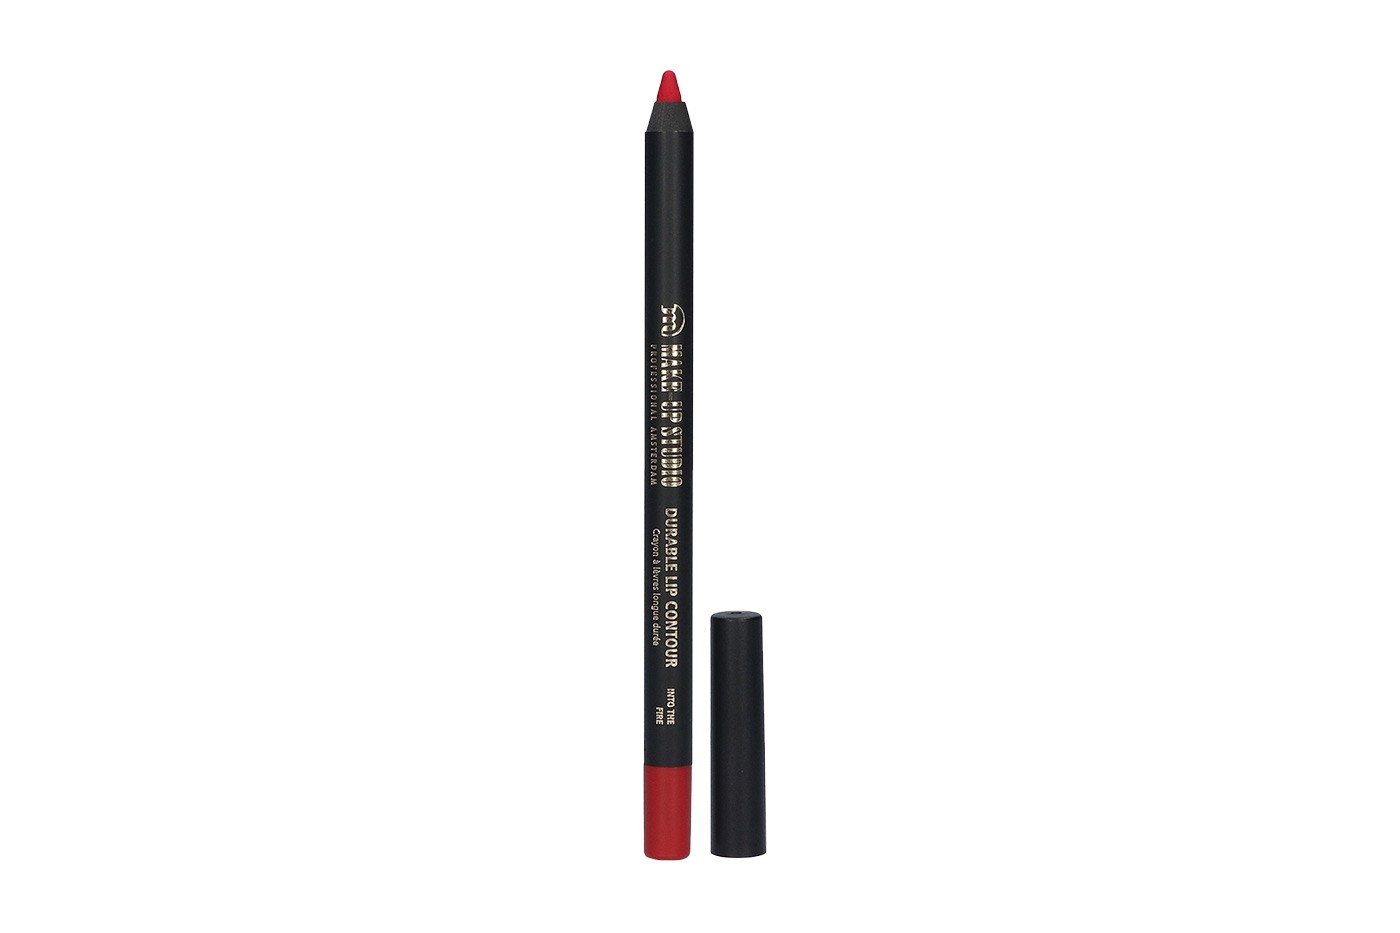 Makeup Studio Durable Lip Contour Pencil for a perfect pout